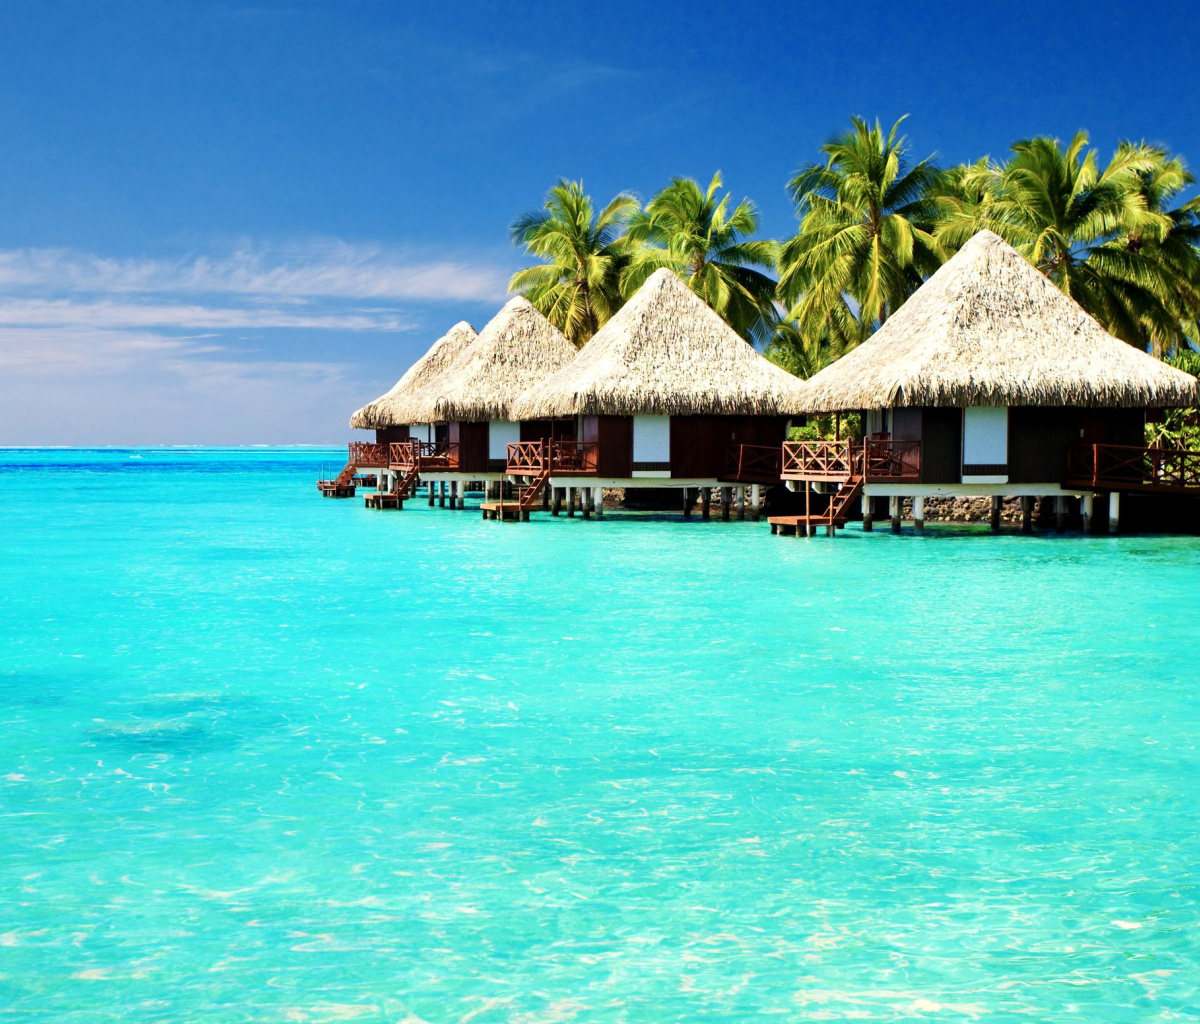 Maldives Islands best Destination for Honeymoon wallpaper 1200x1024